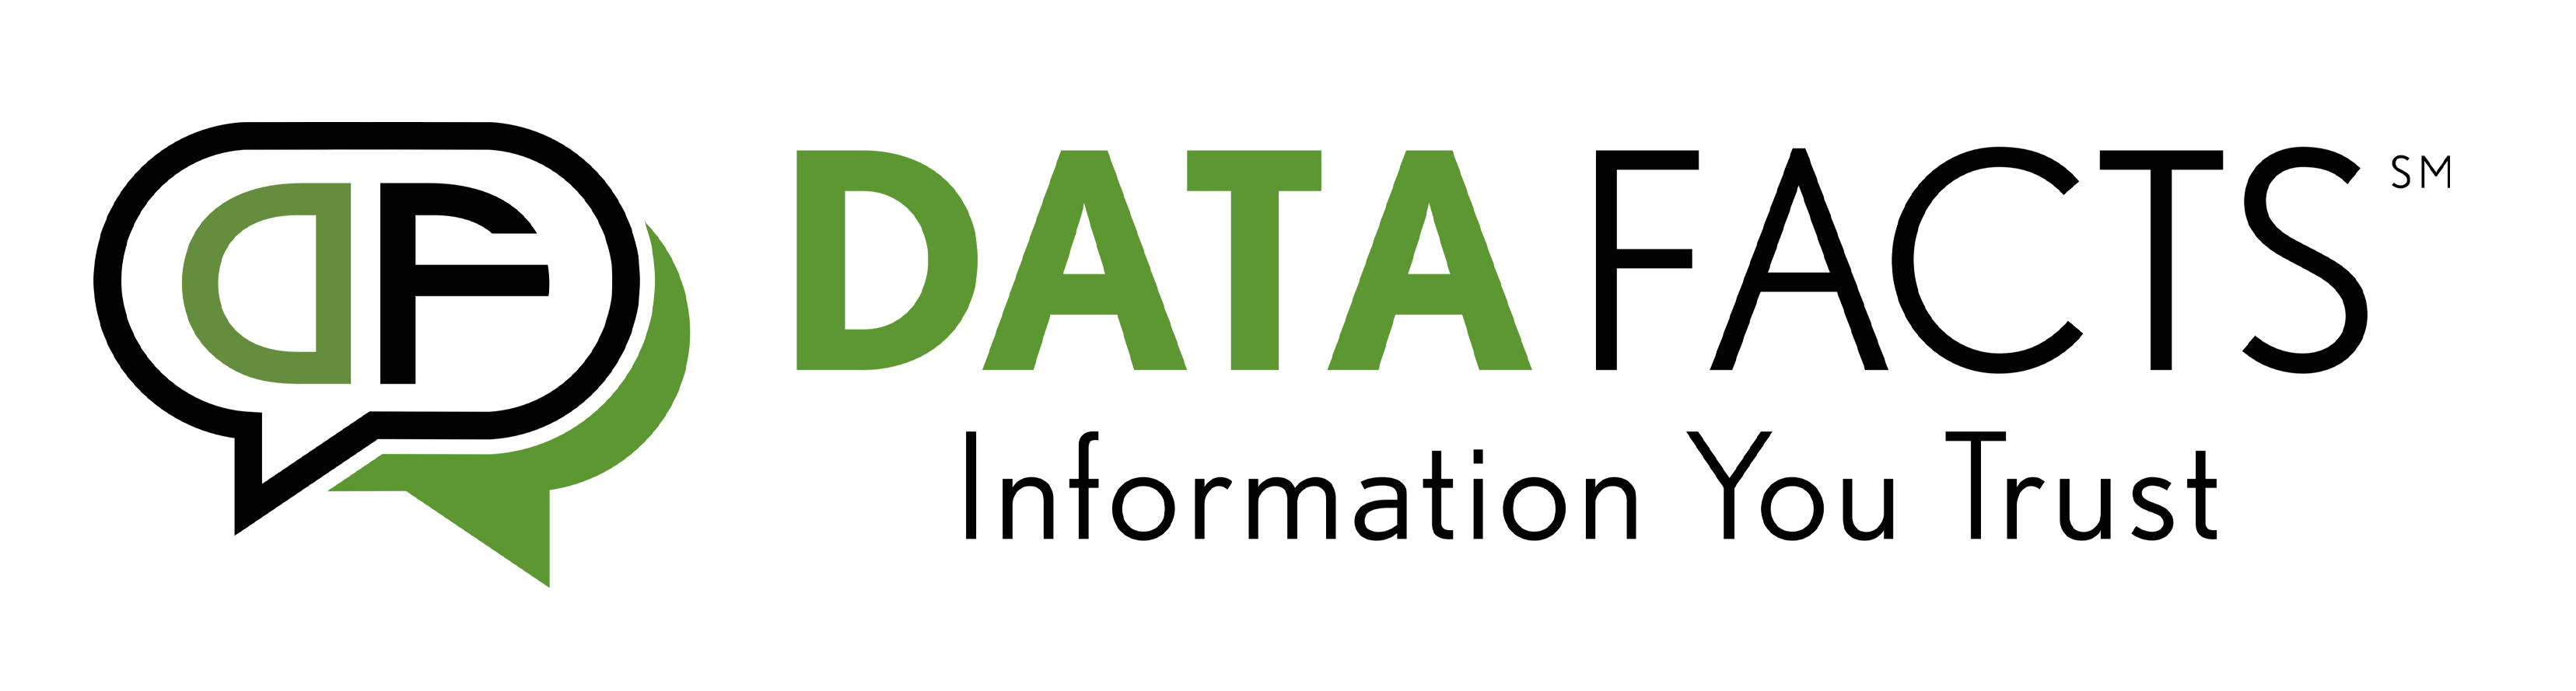 datafacts-logo